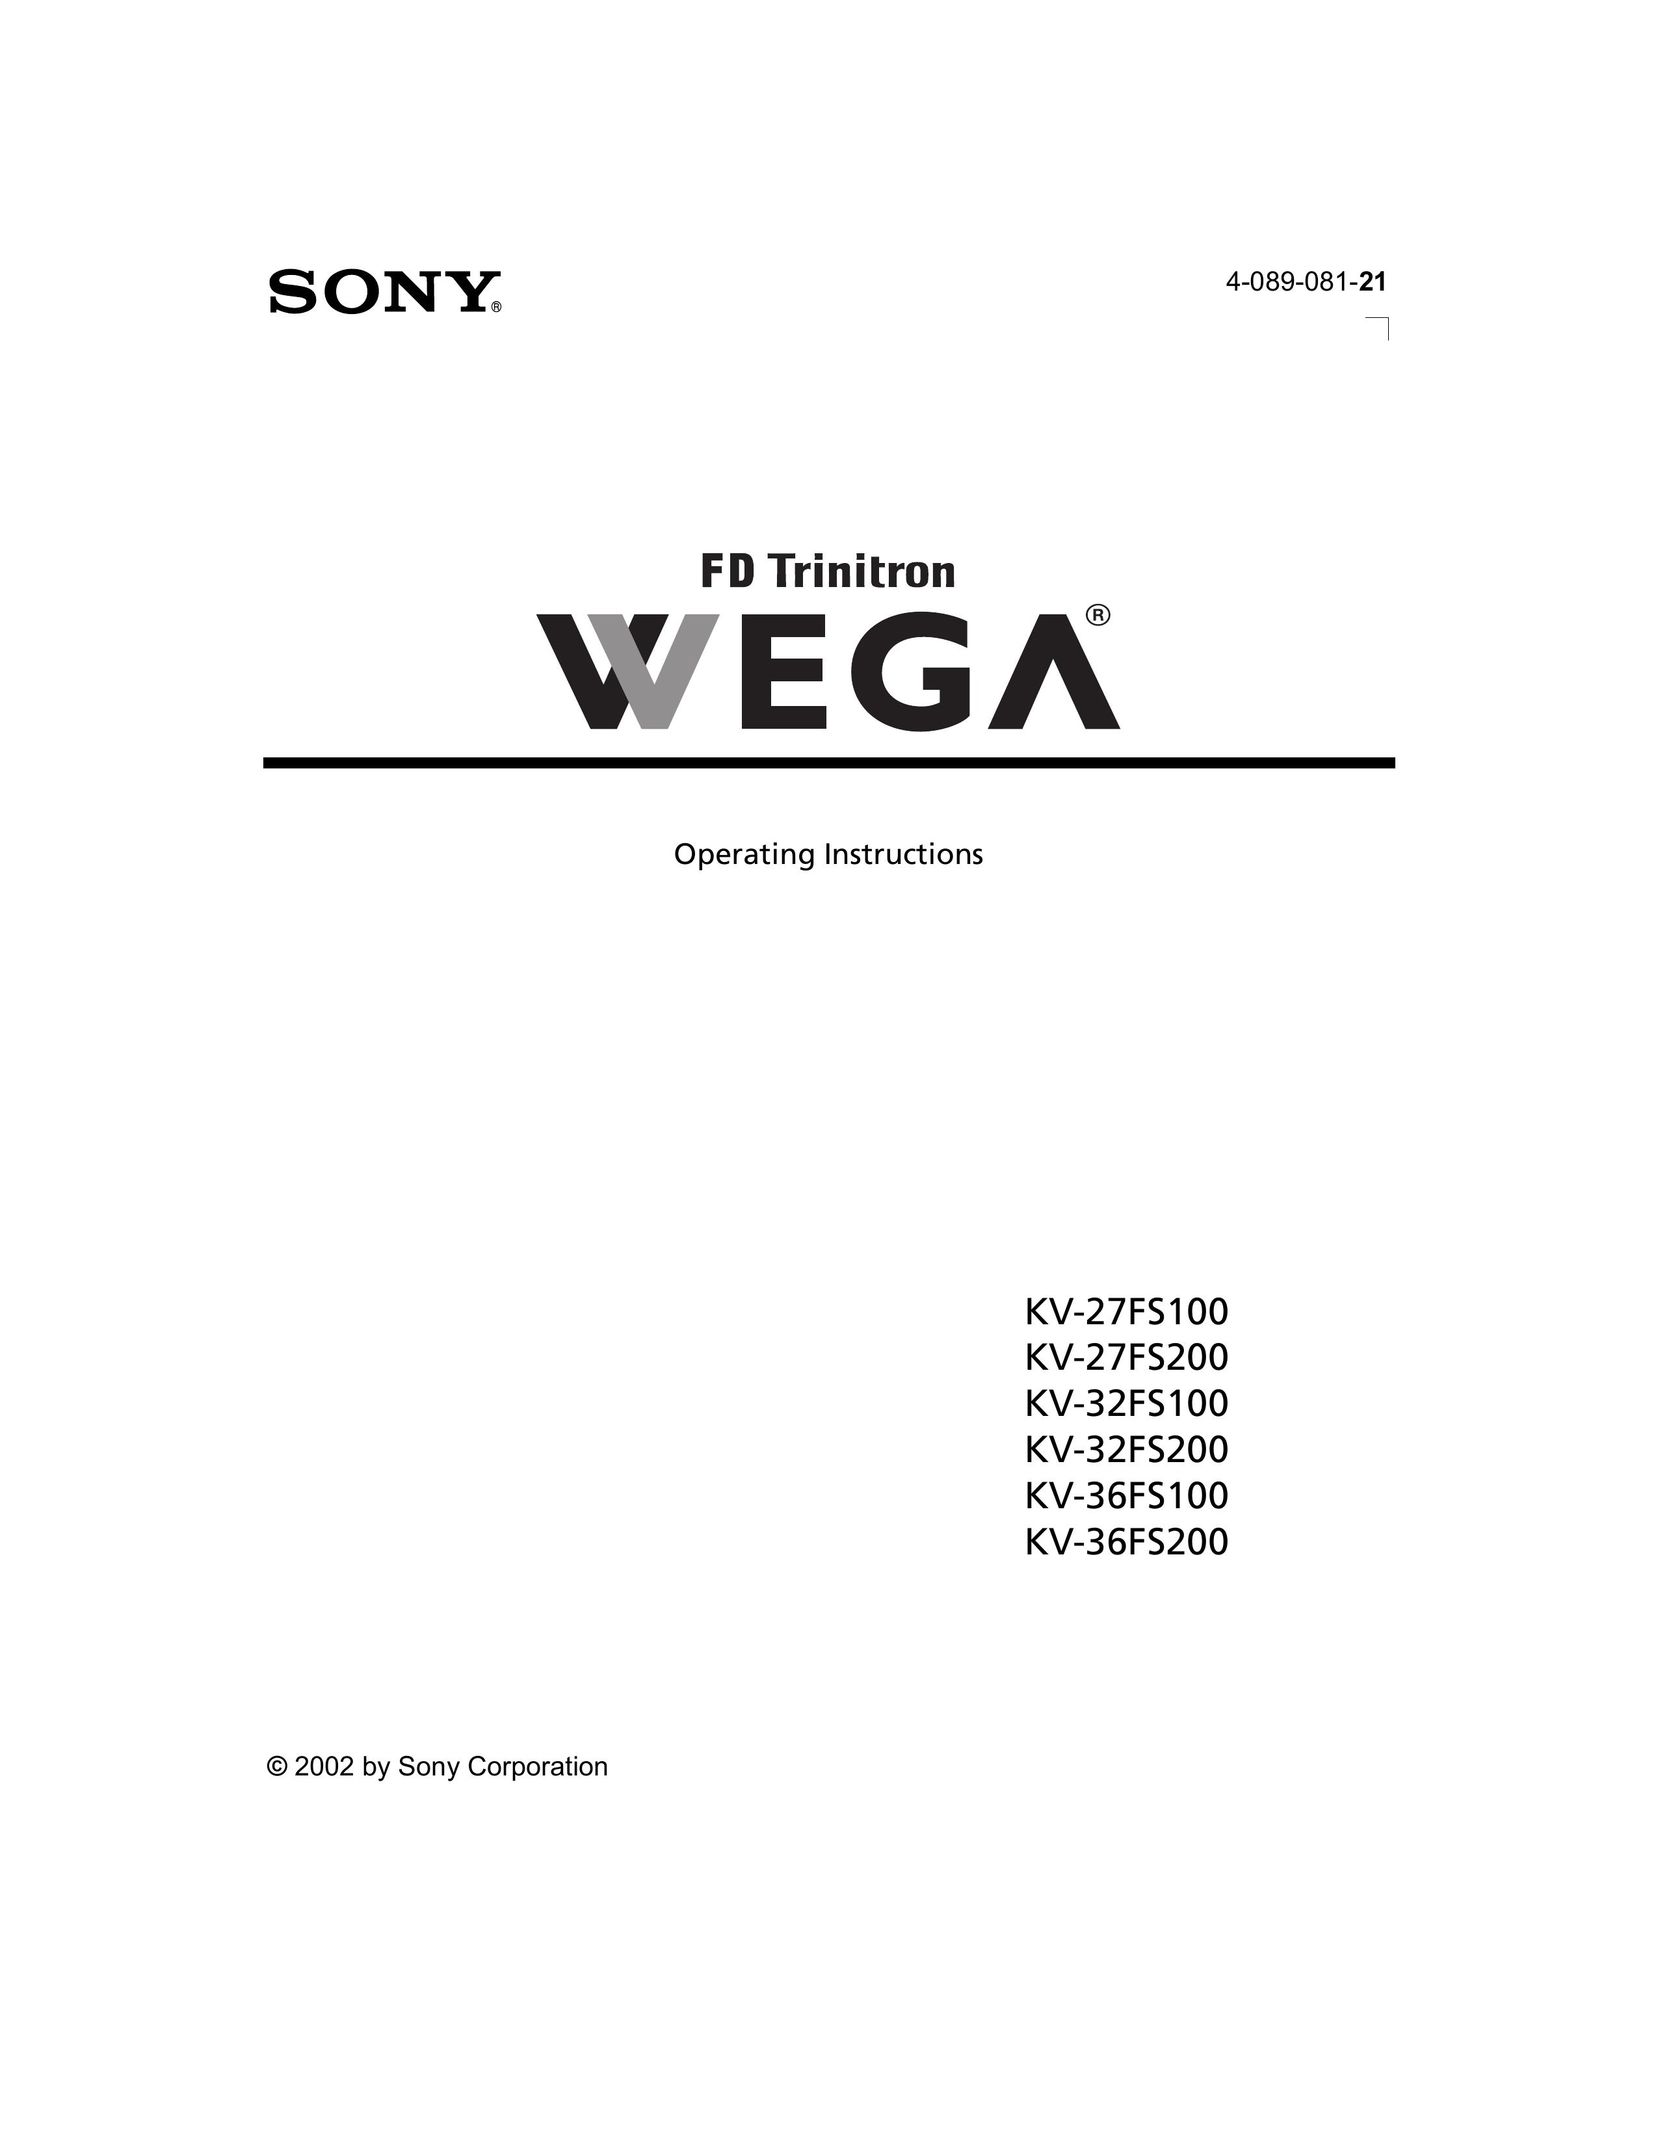 Sony KV-27FS100 Car Satellite TV System User Manual